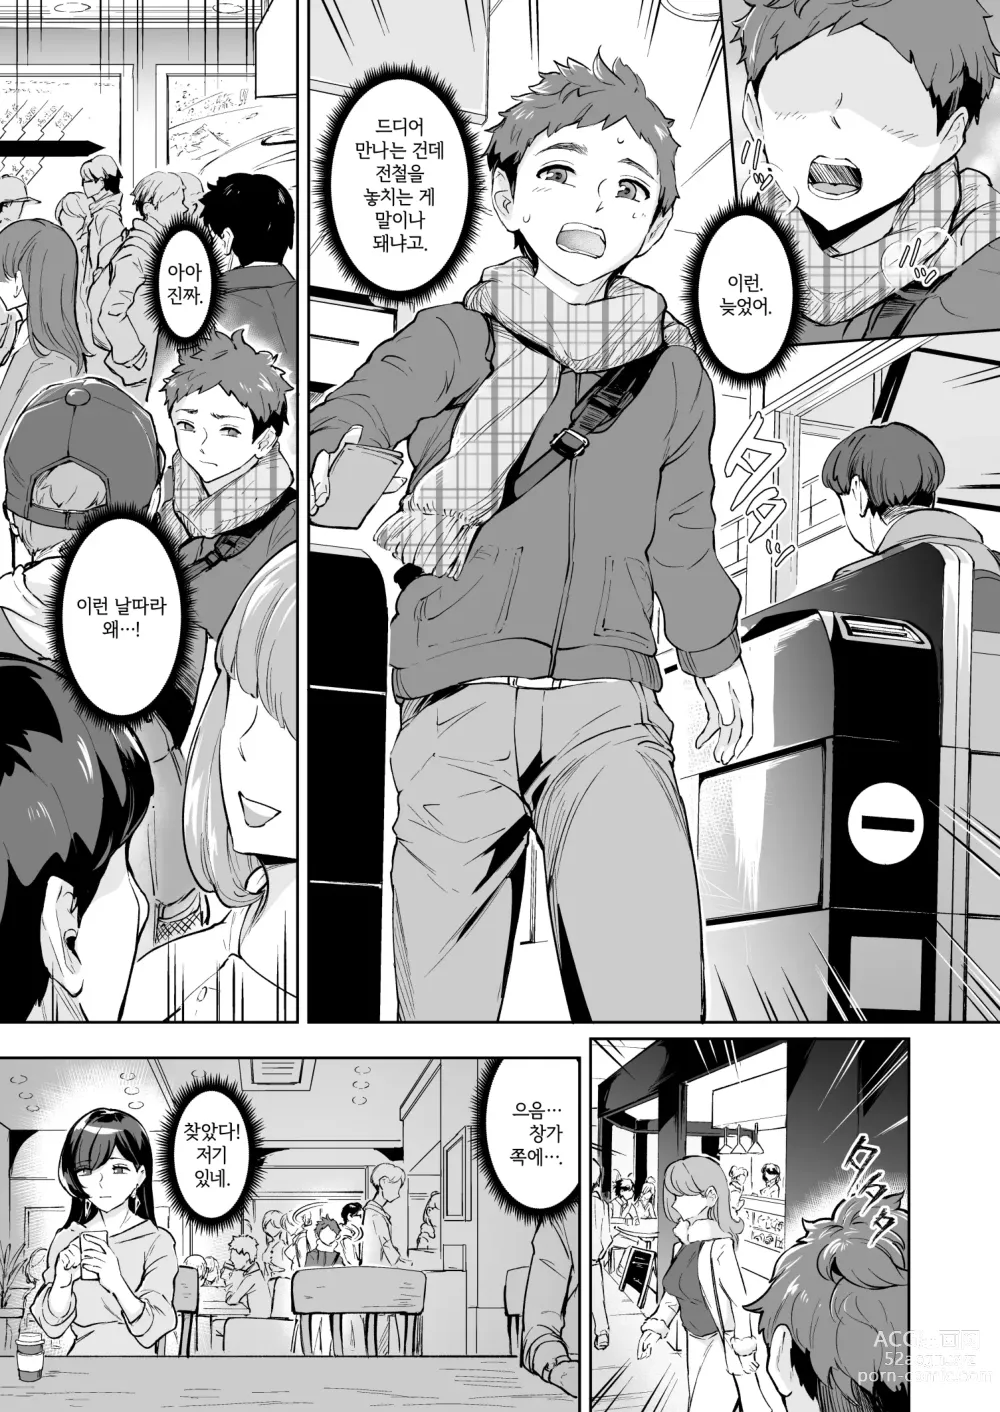 Page 2 of doujinshi 나타난 치녀는 연하킬러인 스카토로 변태였습니다 3